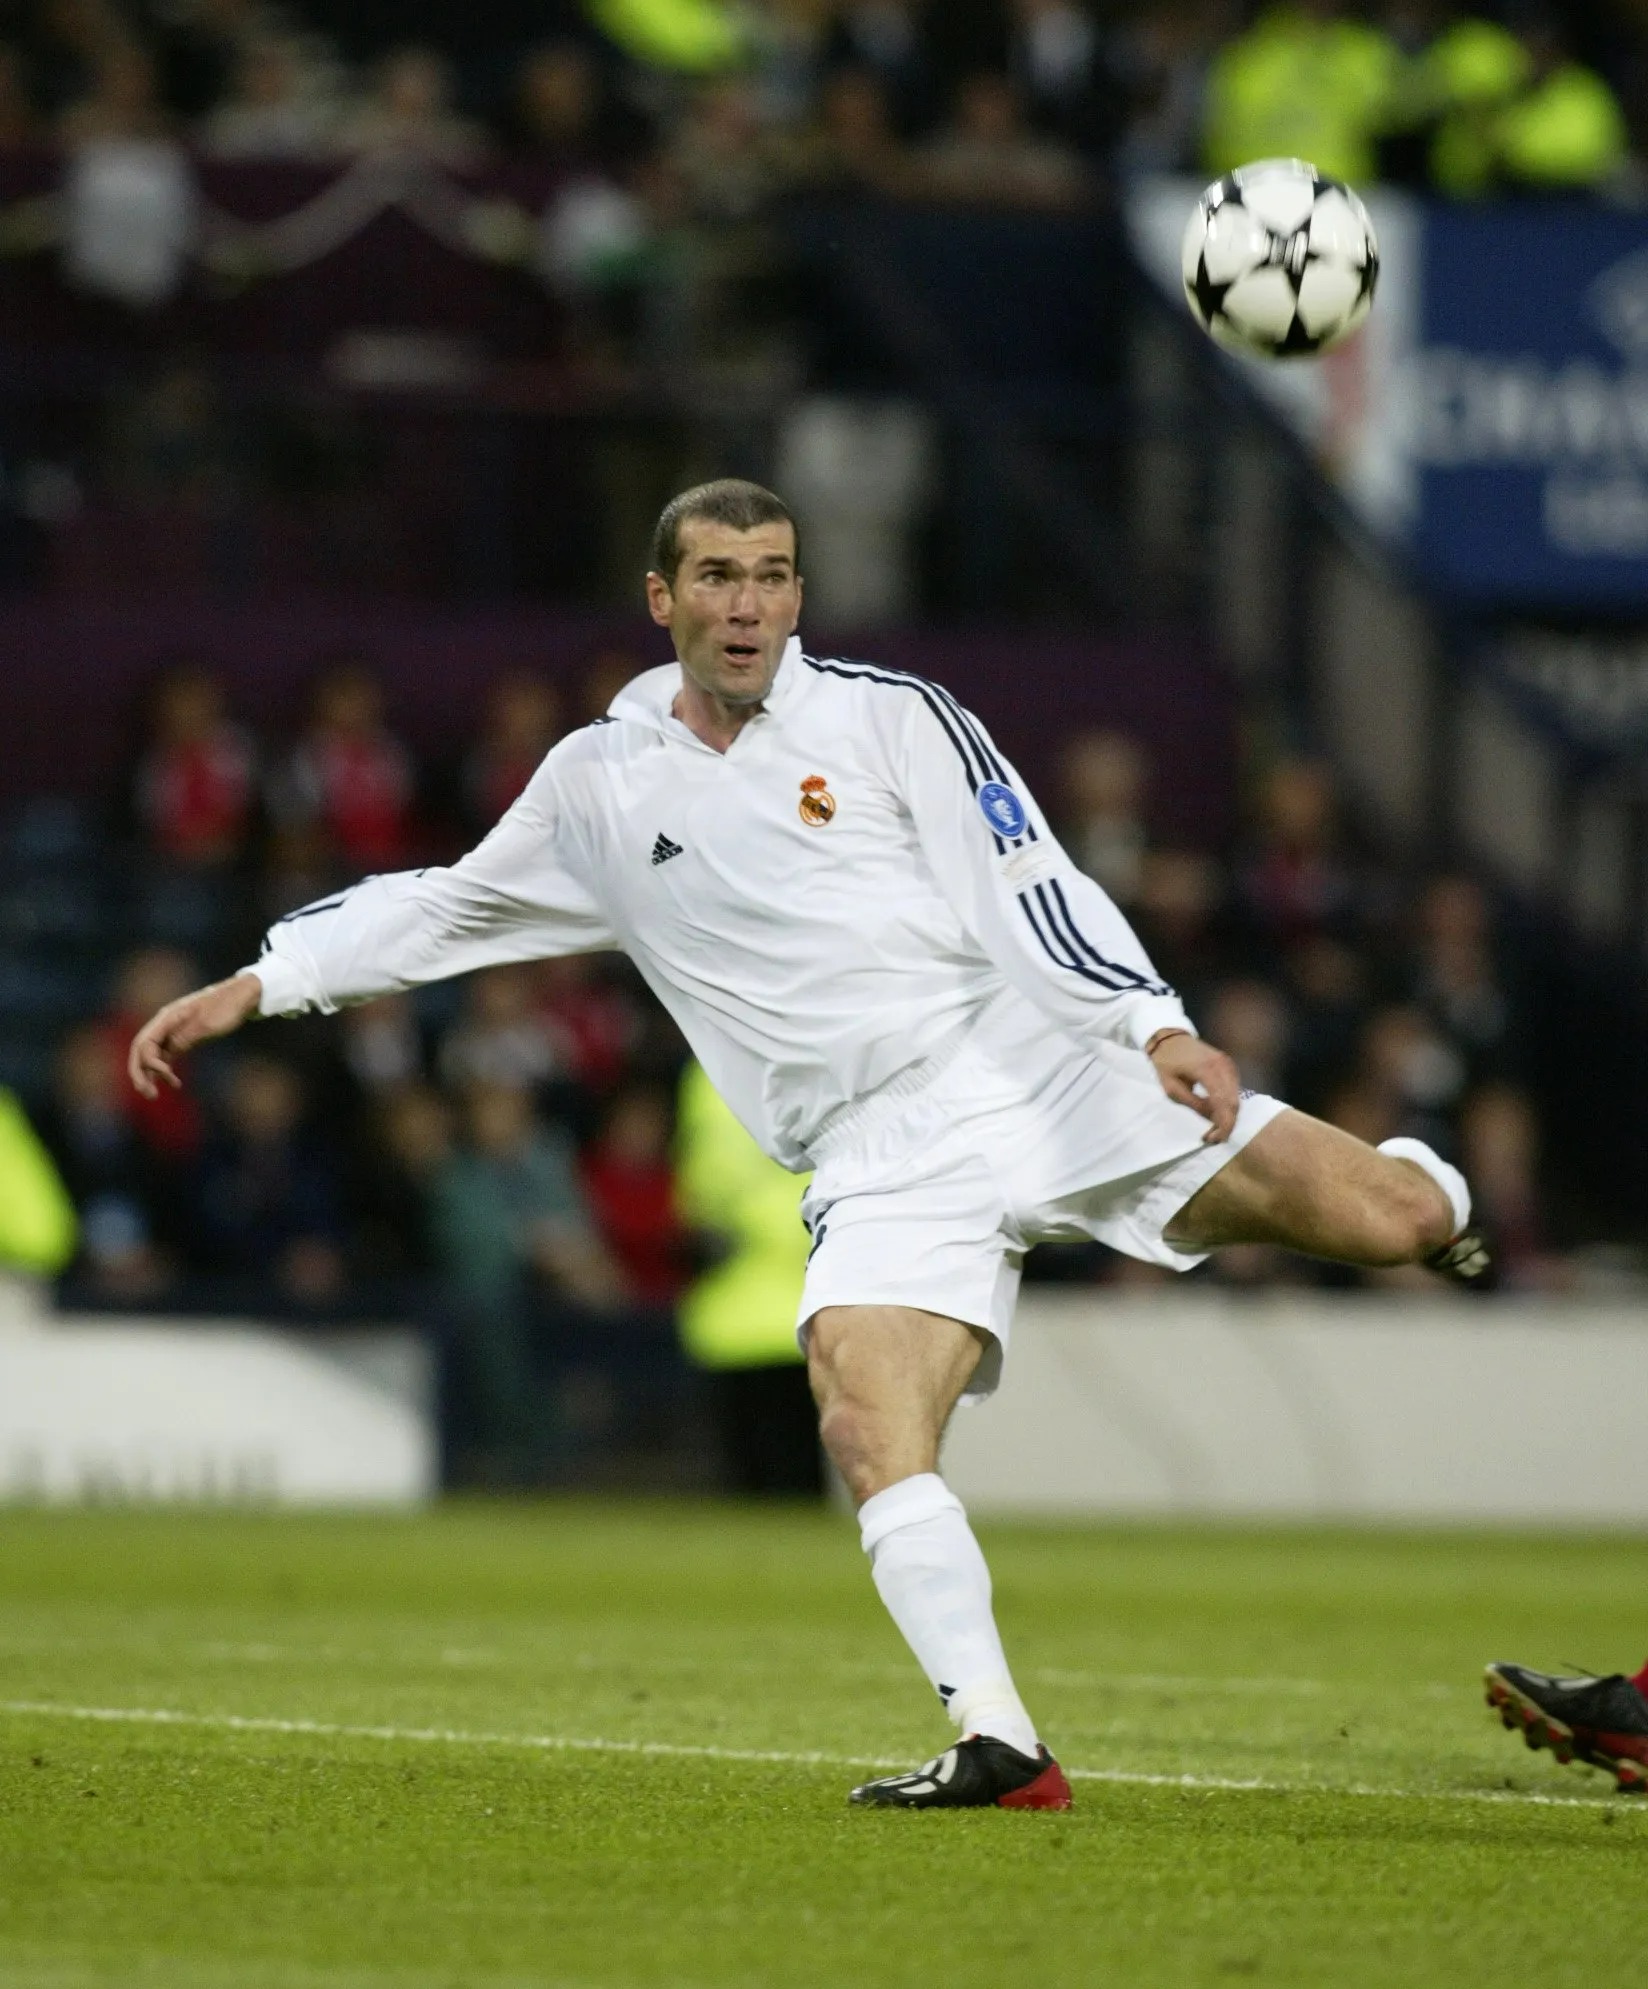 Zidane ghi bàn vô lê trong trận chung kết Champions League khi mang giày